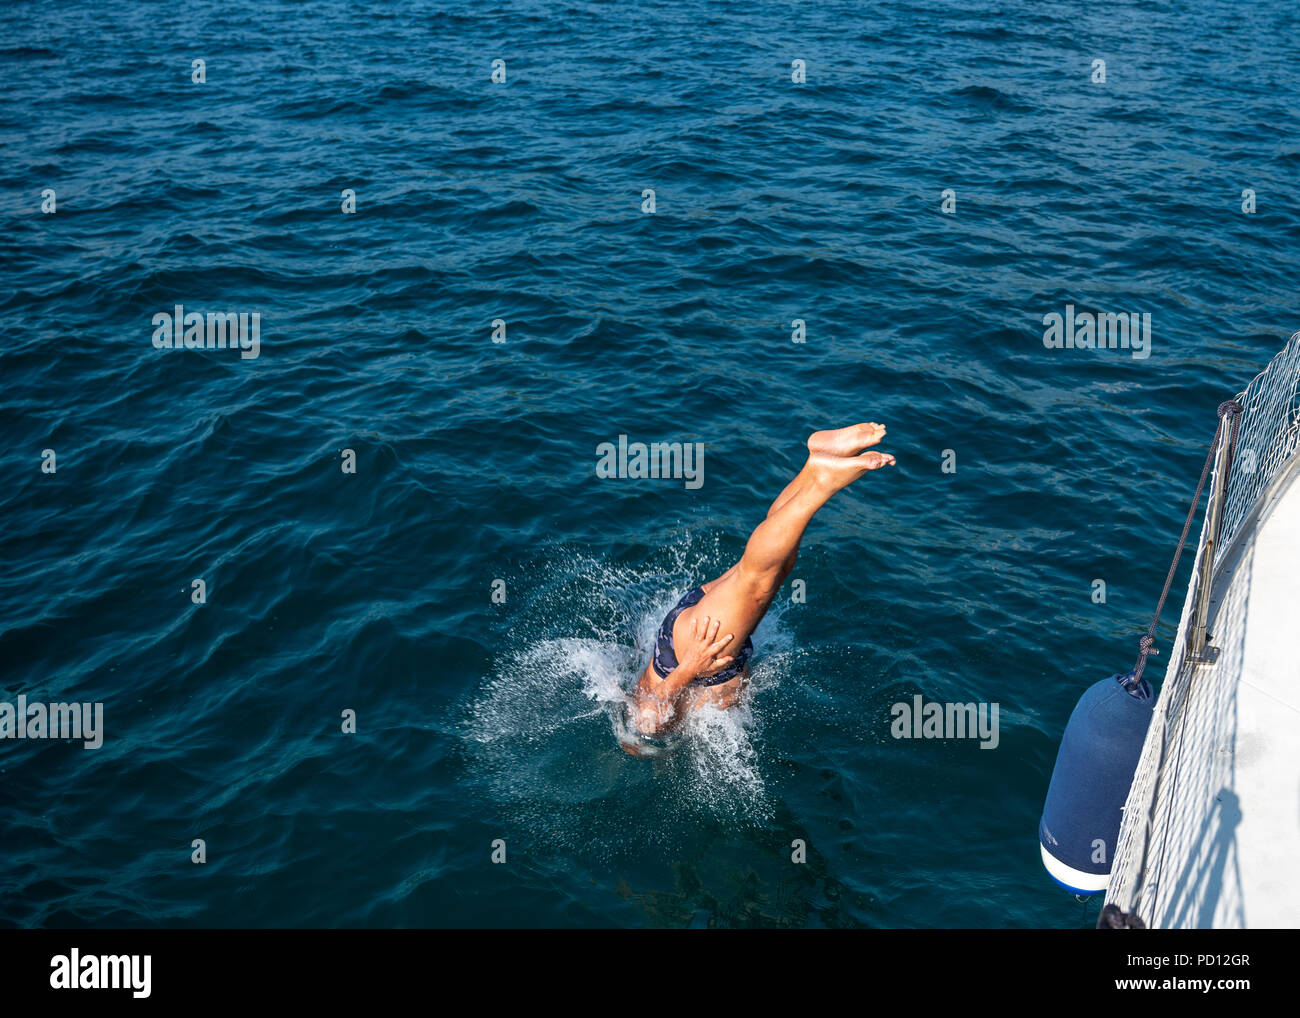 Triest, Italien, 4. August 2018. Ein Mann taucht in das Wasser von einem Segelboot in der Adria, in der Nähe von Triest. Foto von Enrique Ufer Stockfoto